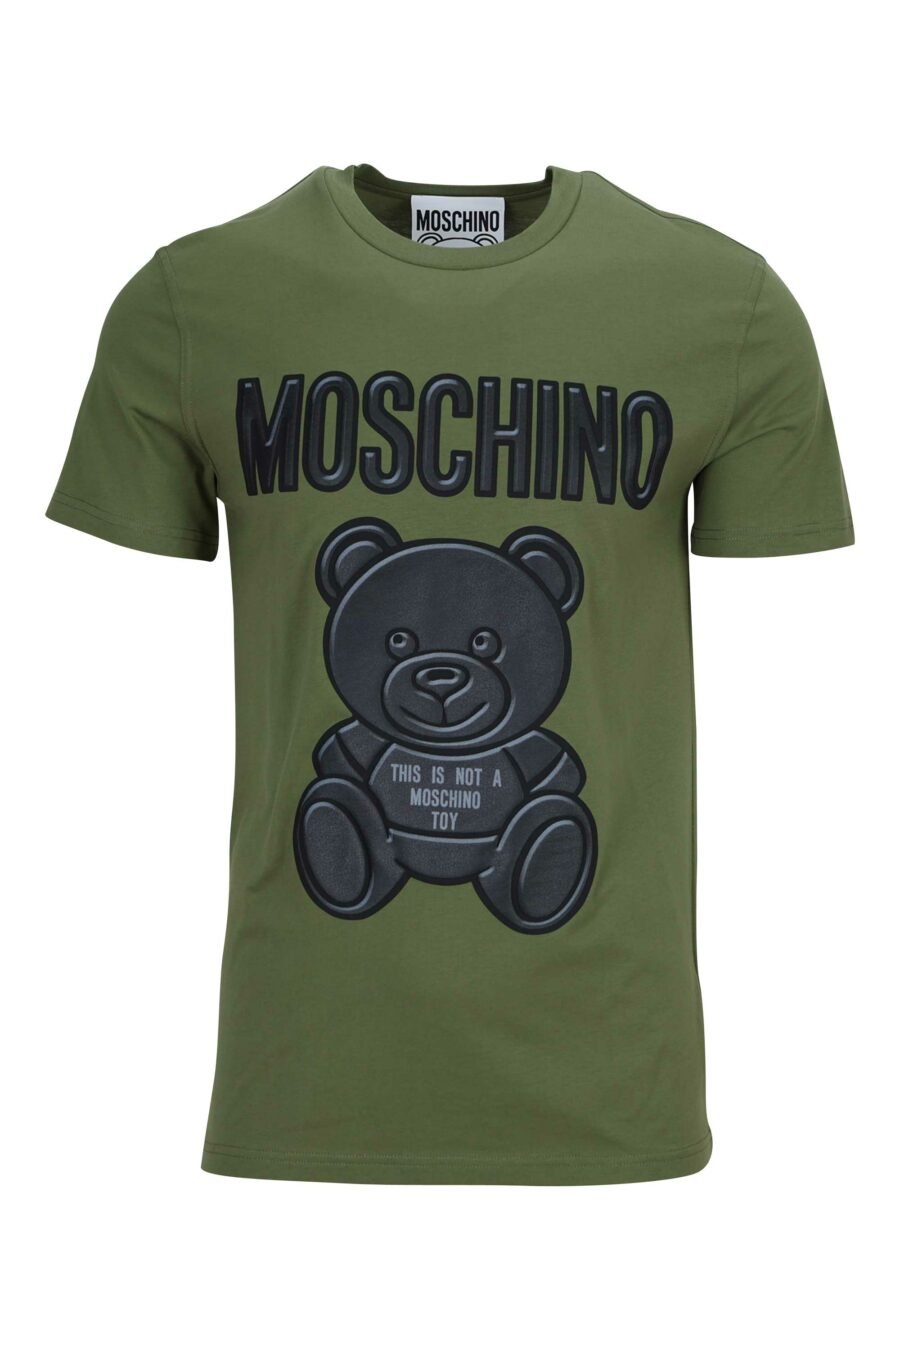 T-shirt vert militaire en coton biologique avec maxilogo "teddy" - 889316854527